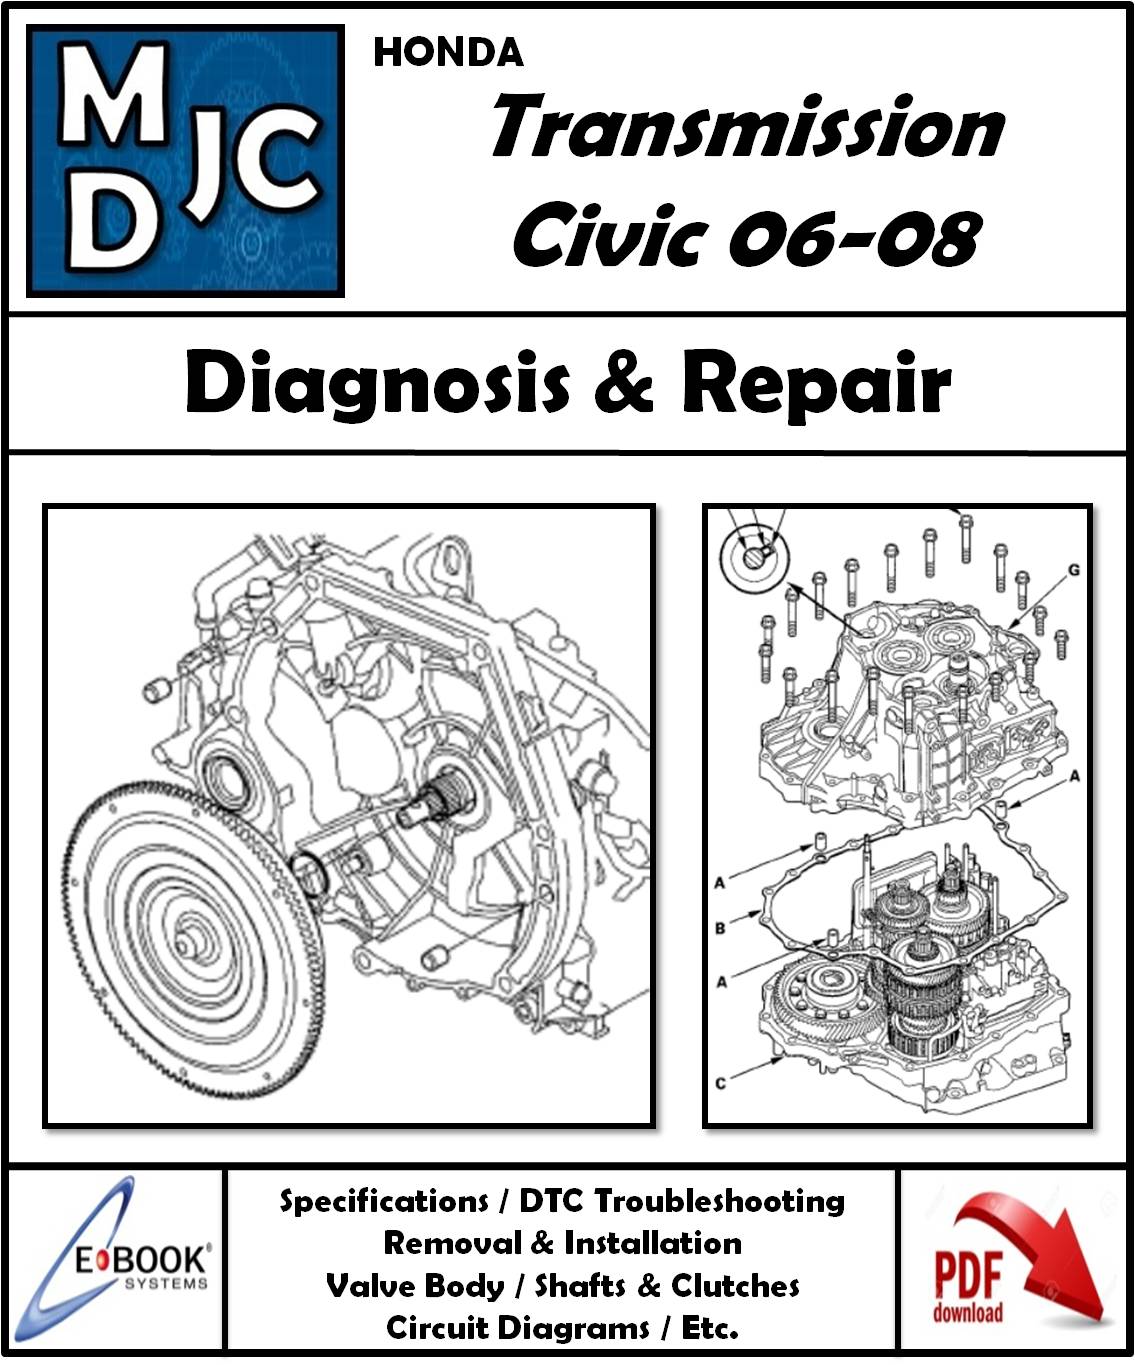 Manual de Taller (Diagnosis y Reparación) Caja Automática Honda Civic 06-08